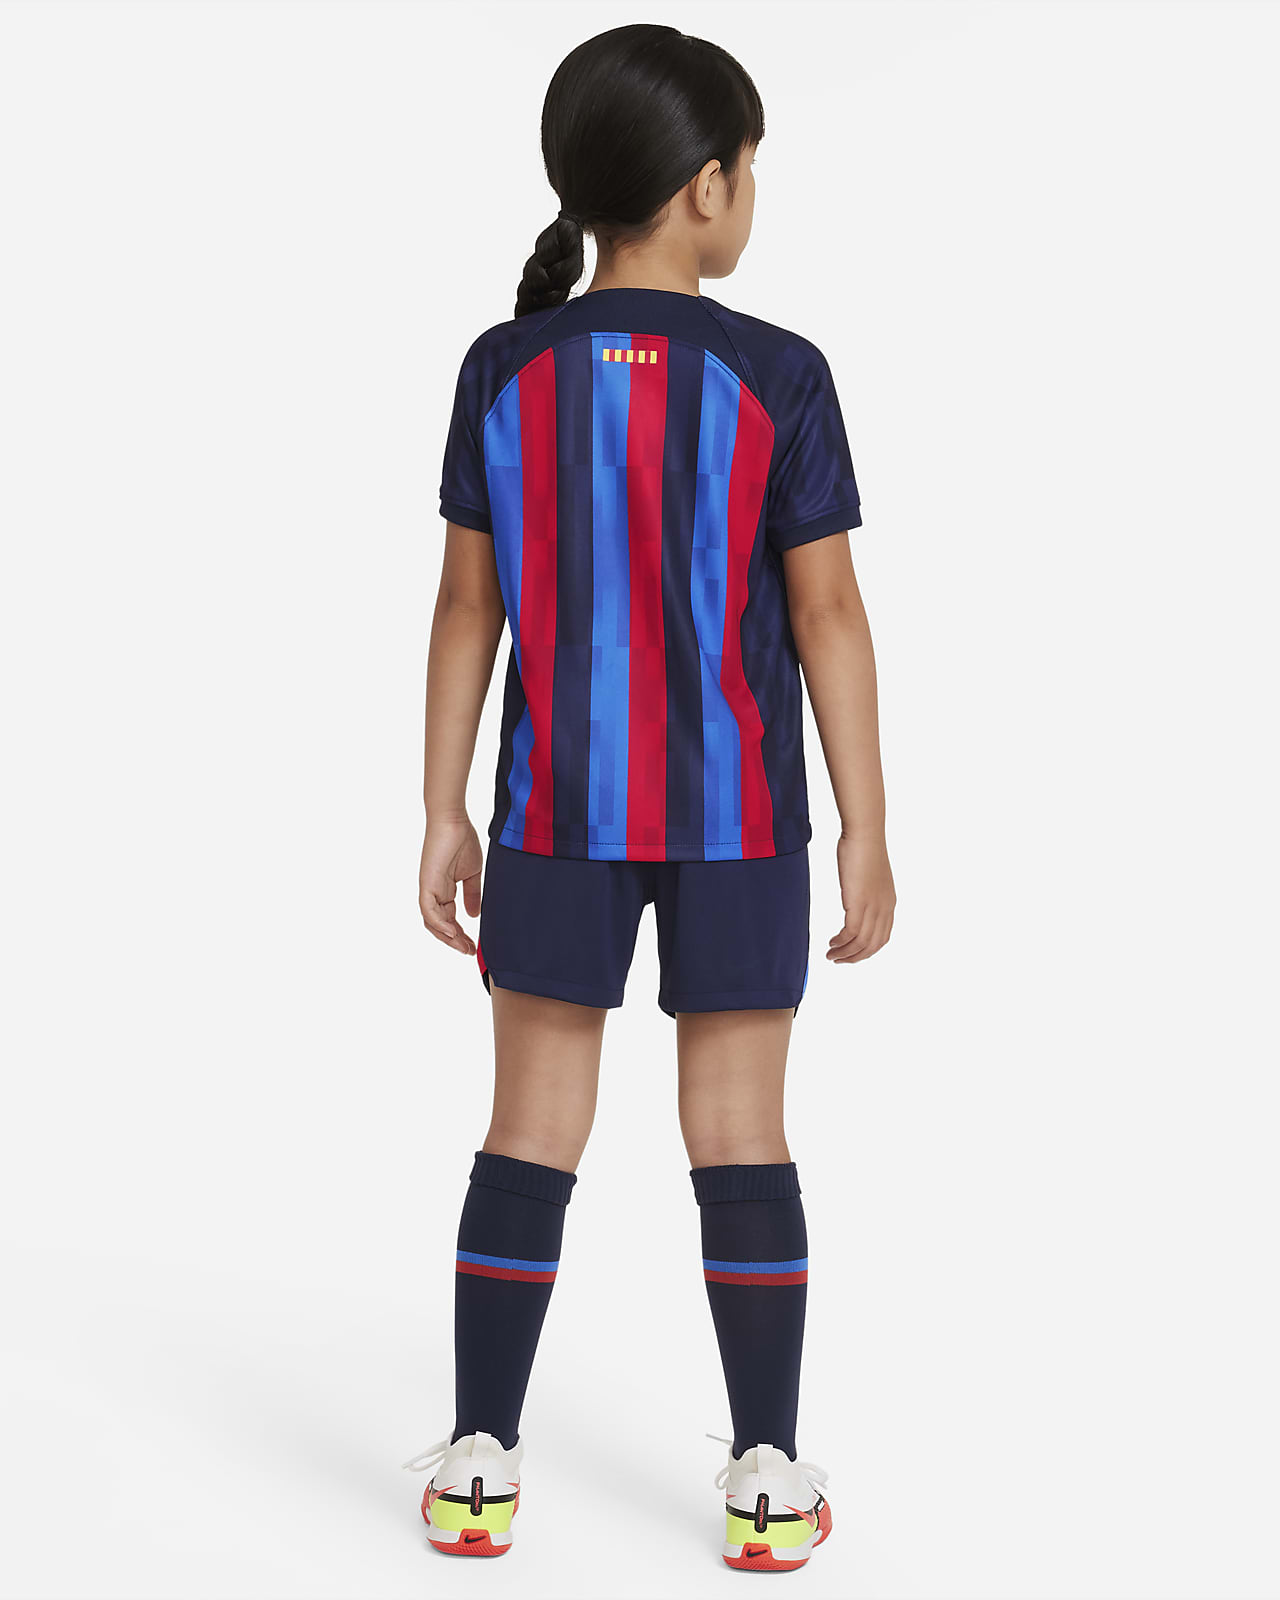 FC Barcelona 2022/23 Home Little Kids' Soccer Kit.